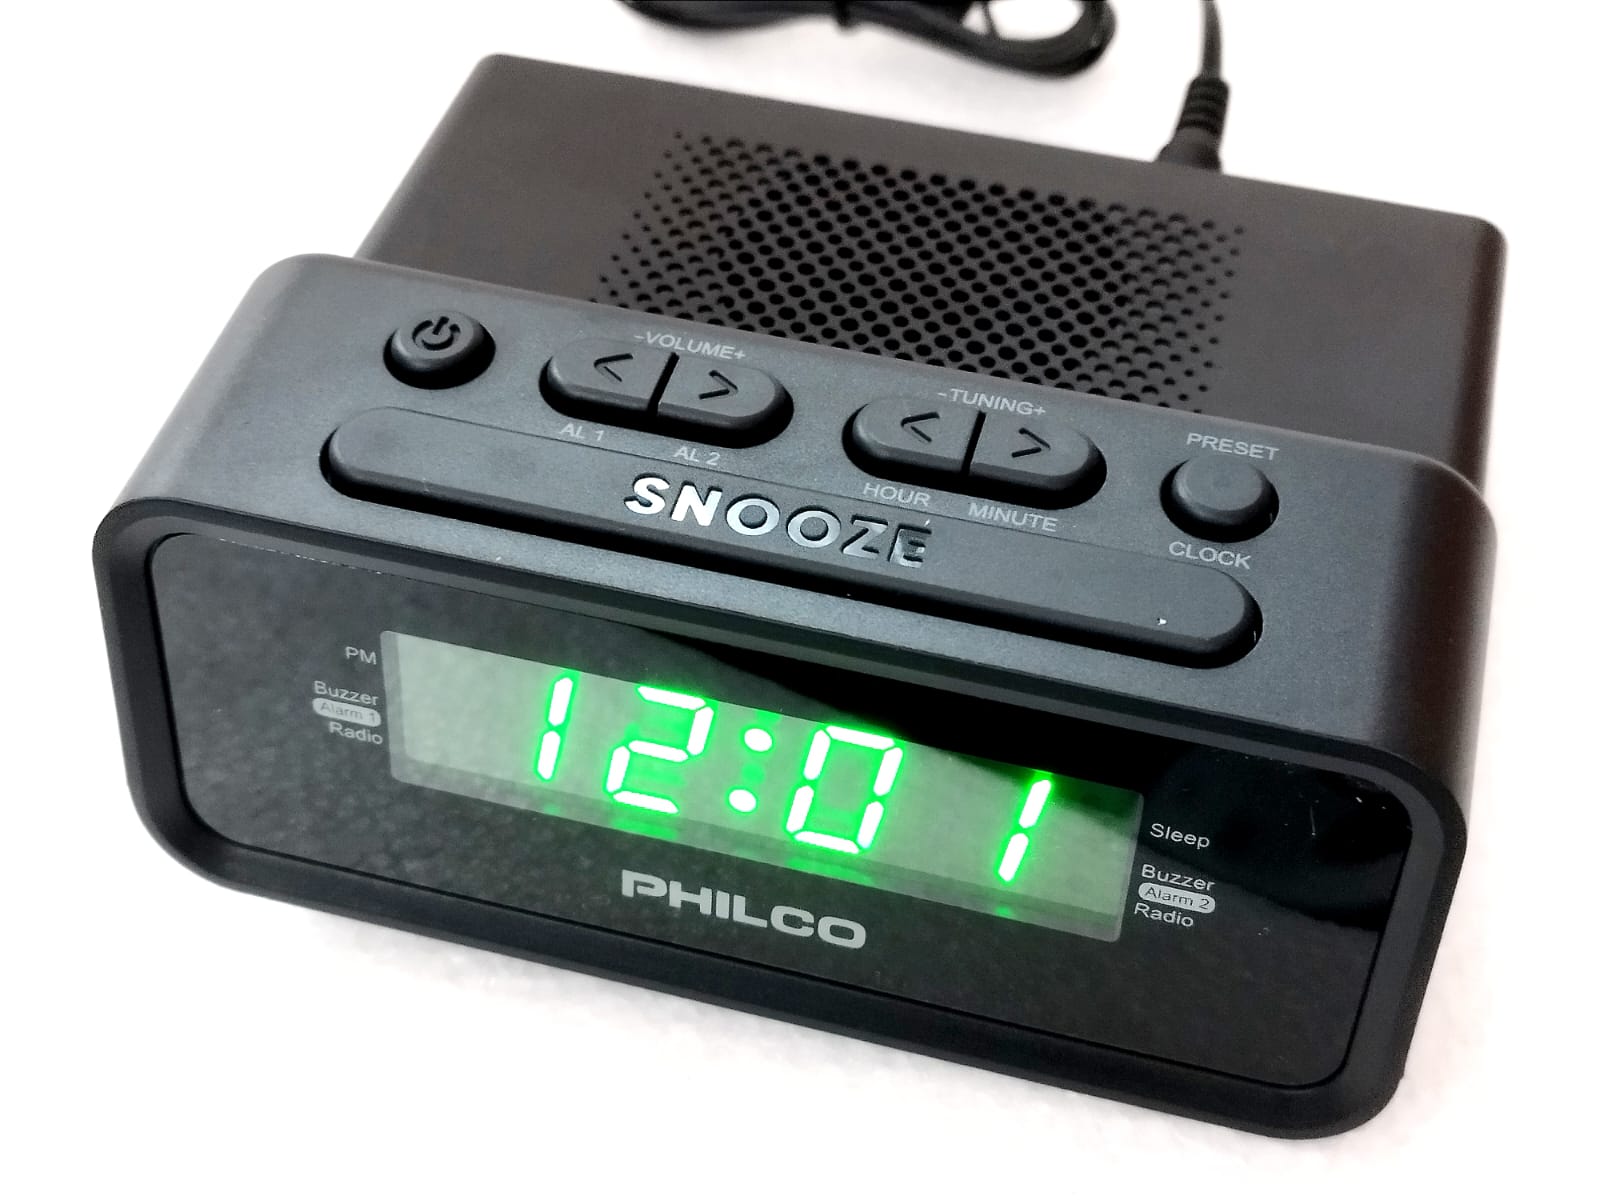 Radio reloj despertador Philco 0.6 FM, alarma dual, memoria para 20  estaciones, negro - Coolbox